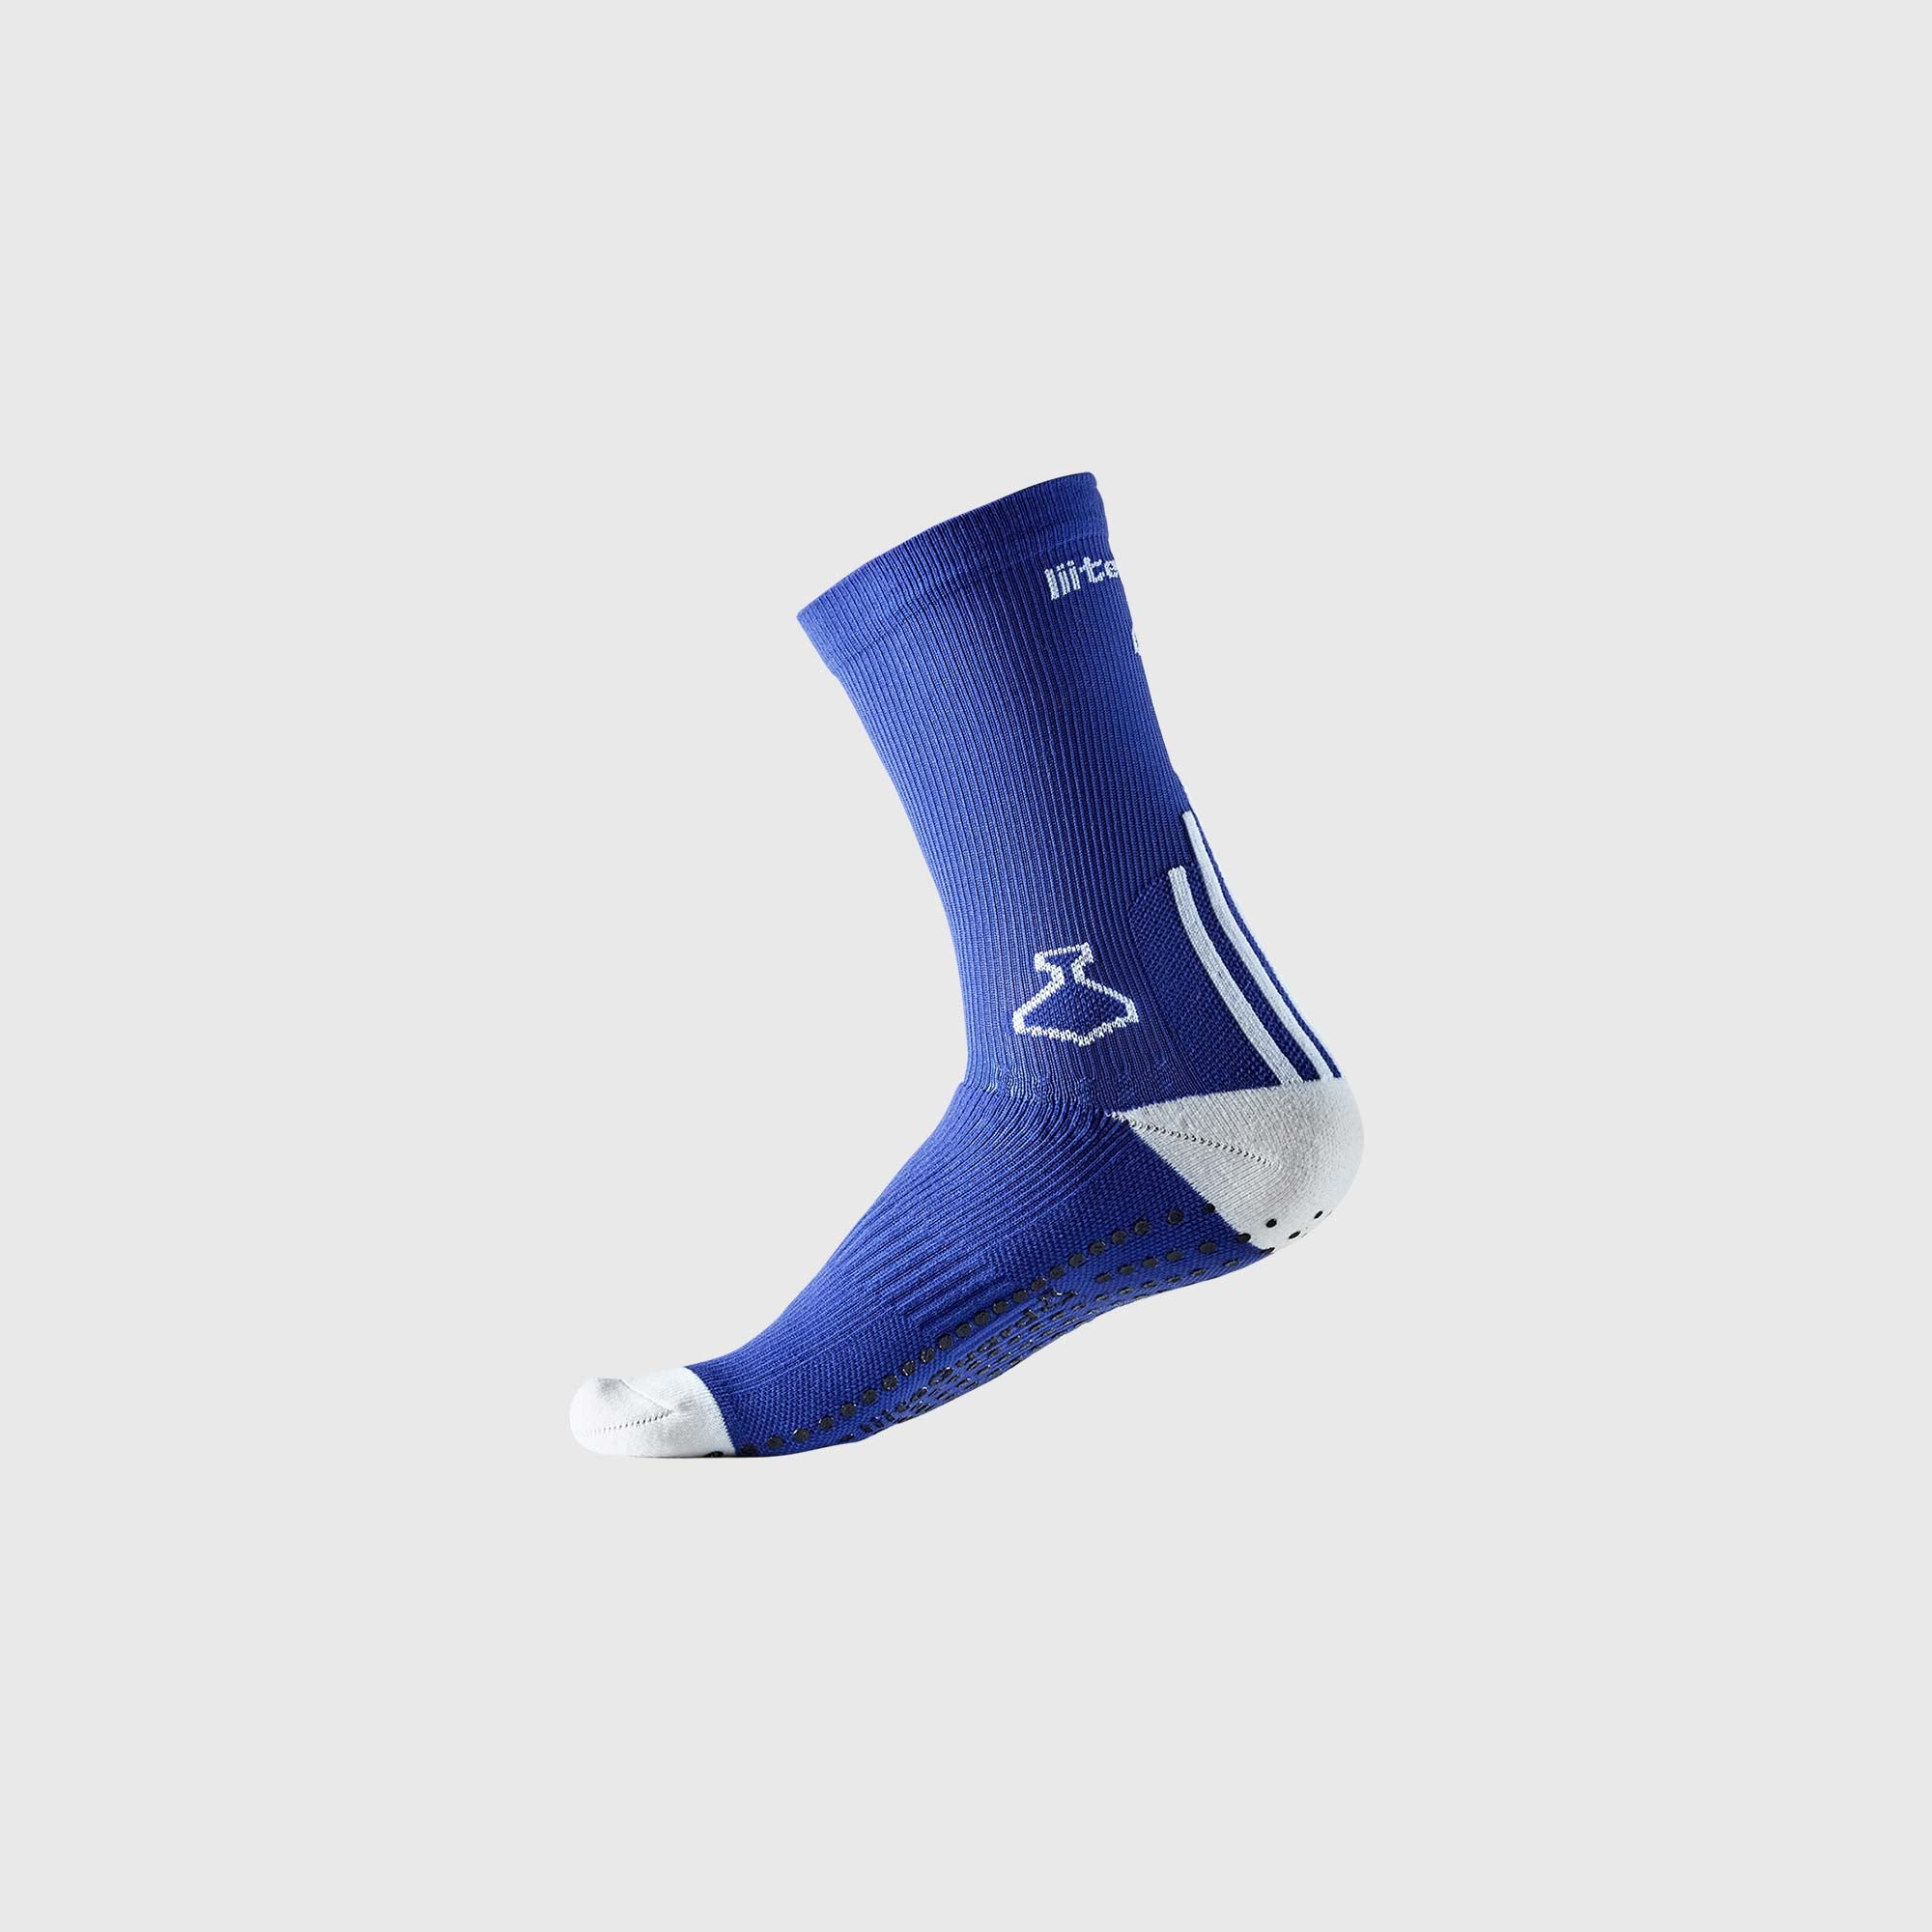 Liiteguard PRO-TECH SOCK Medium socks BLUE